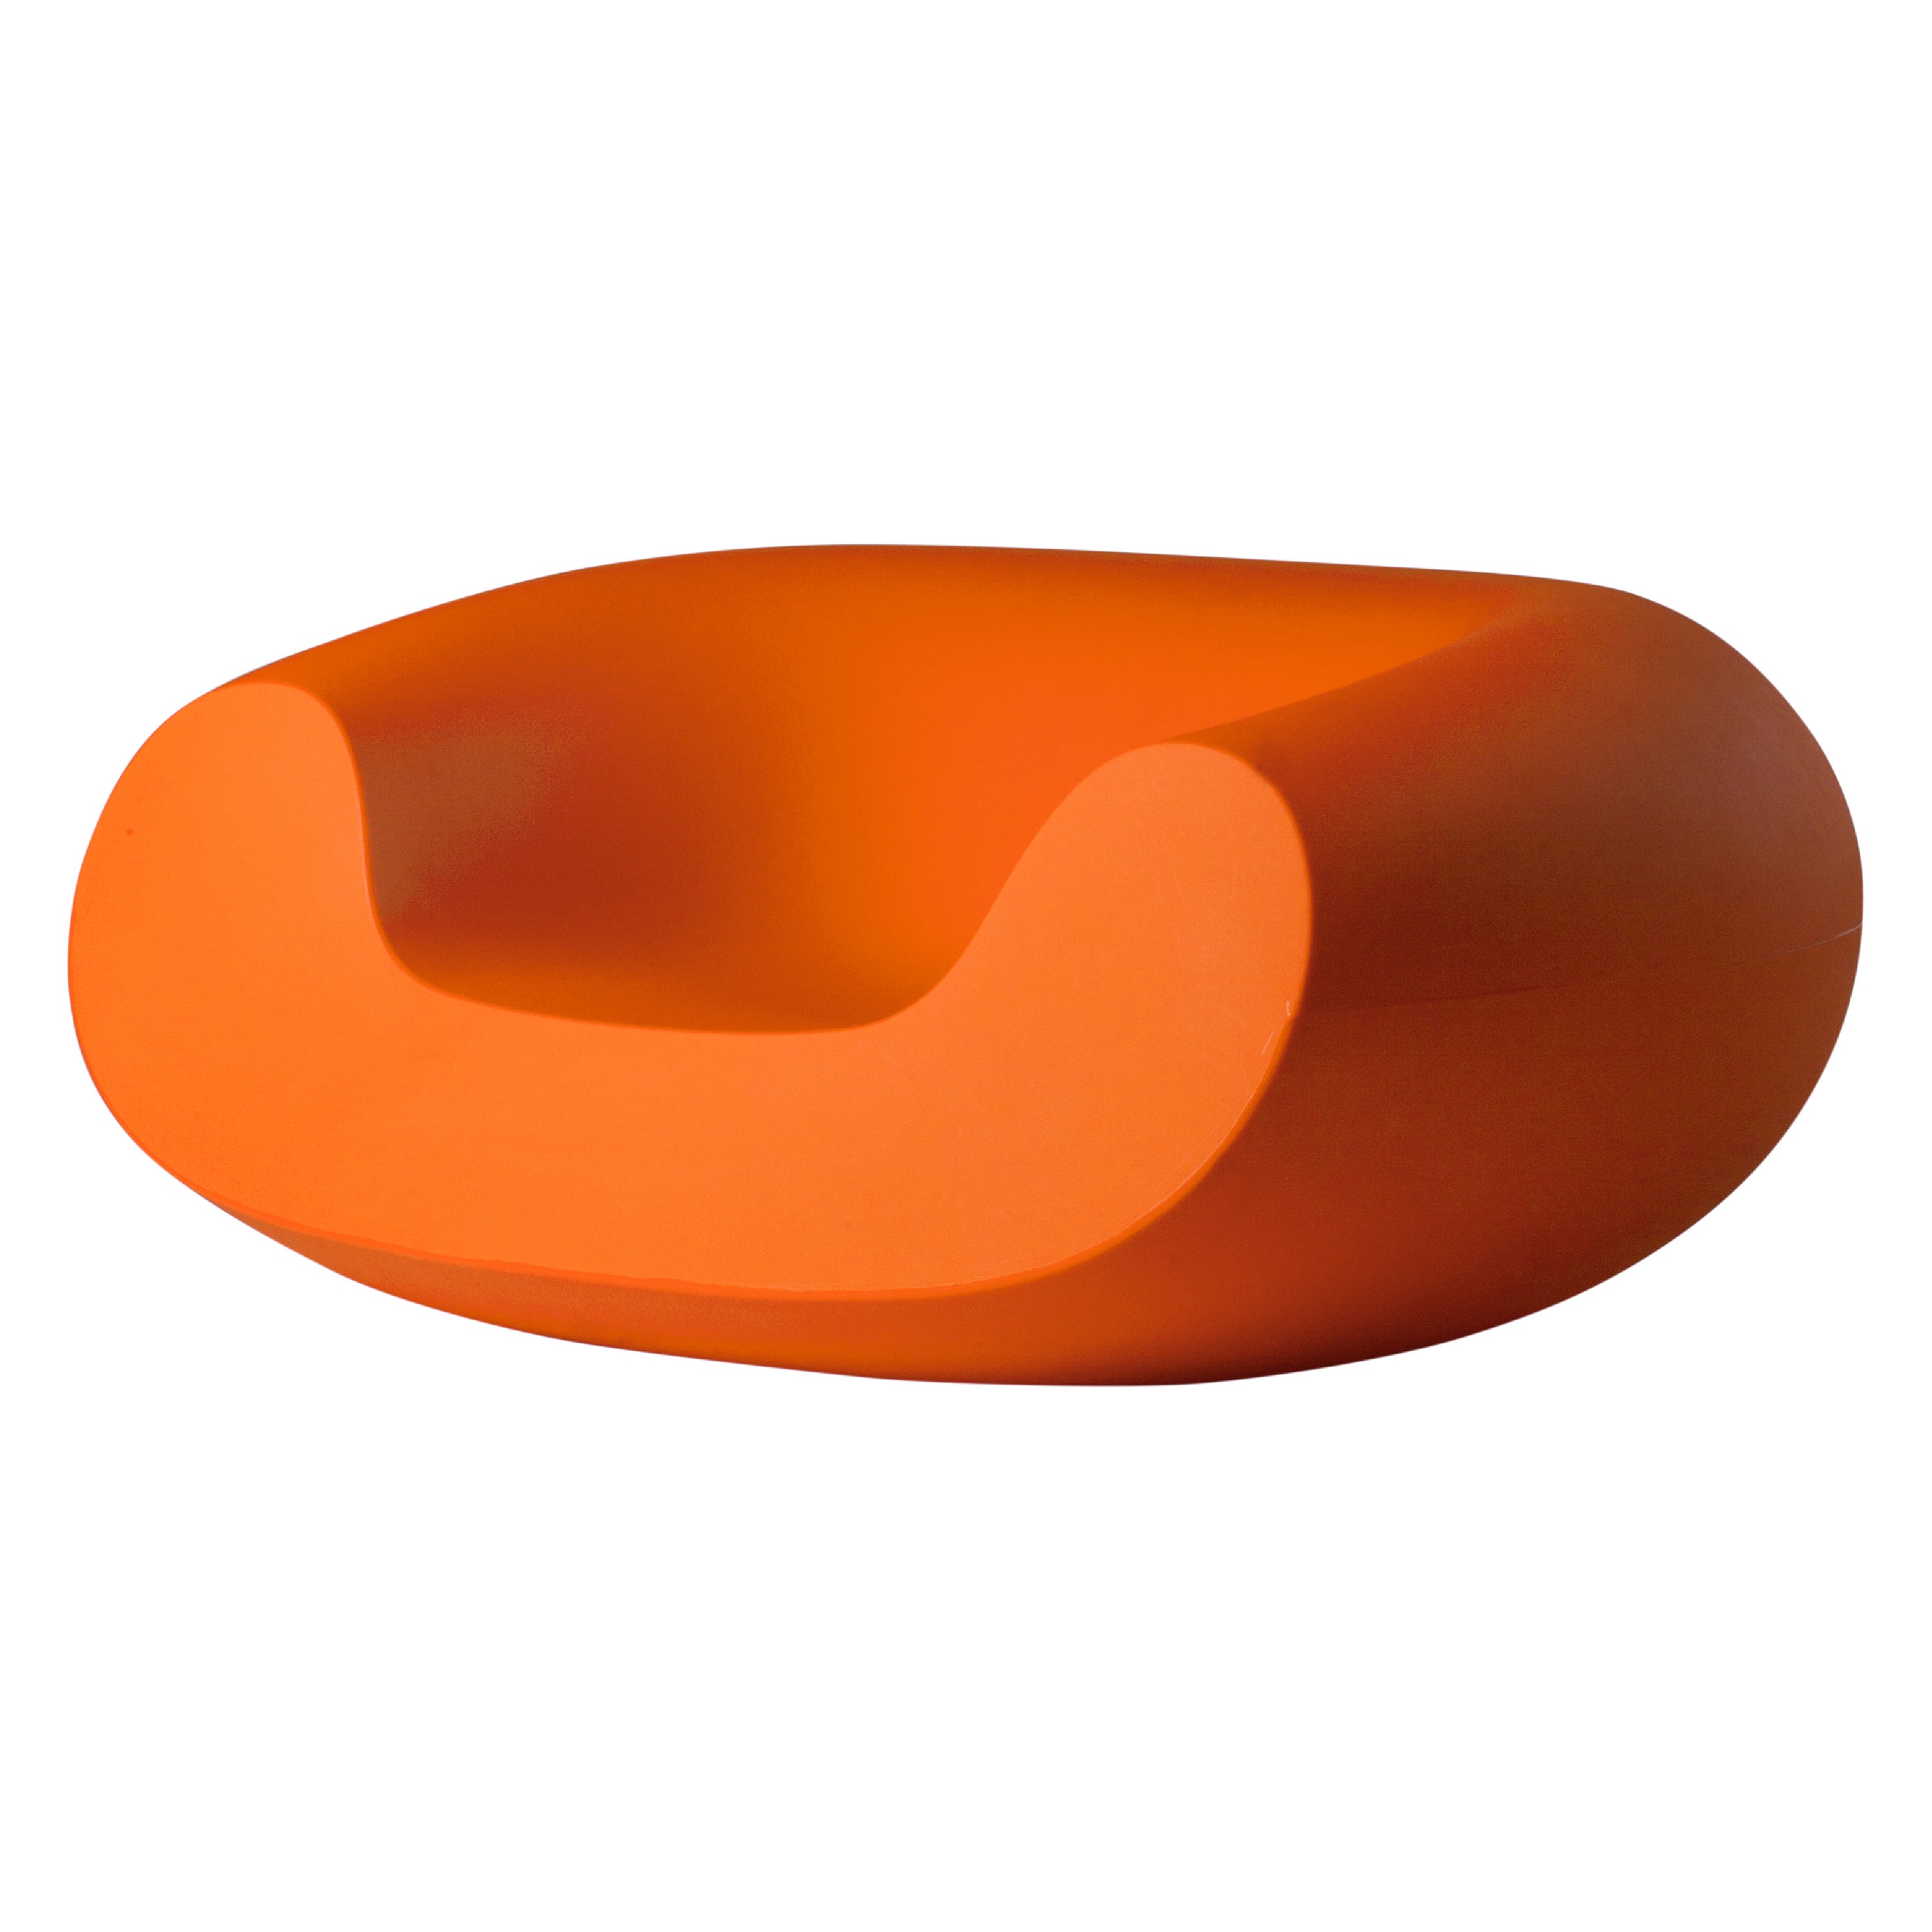 Slide Design Chubby Lounge Armchair in Pumpkin Orange by Marcel Wanders For Sale